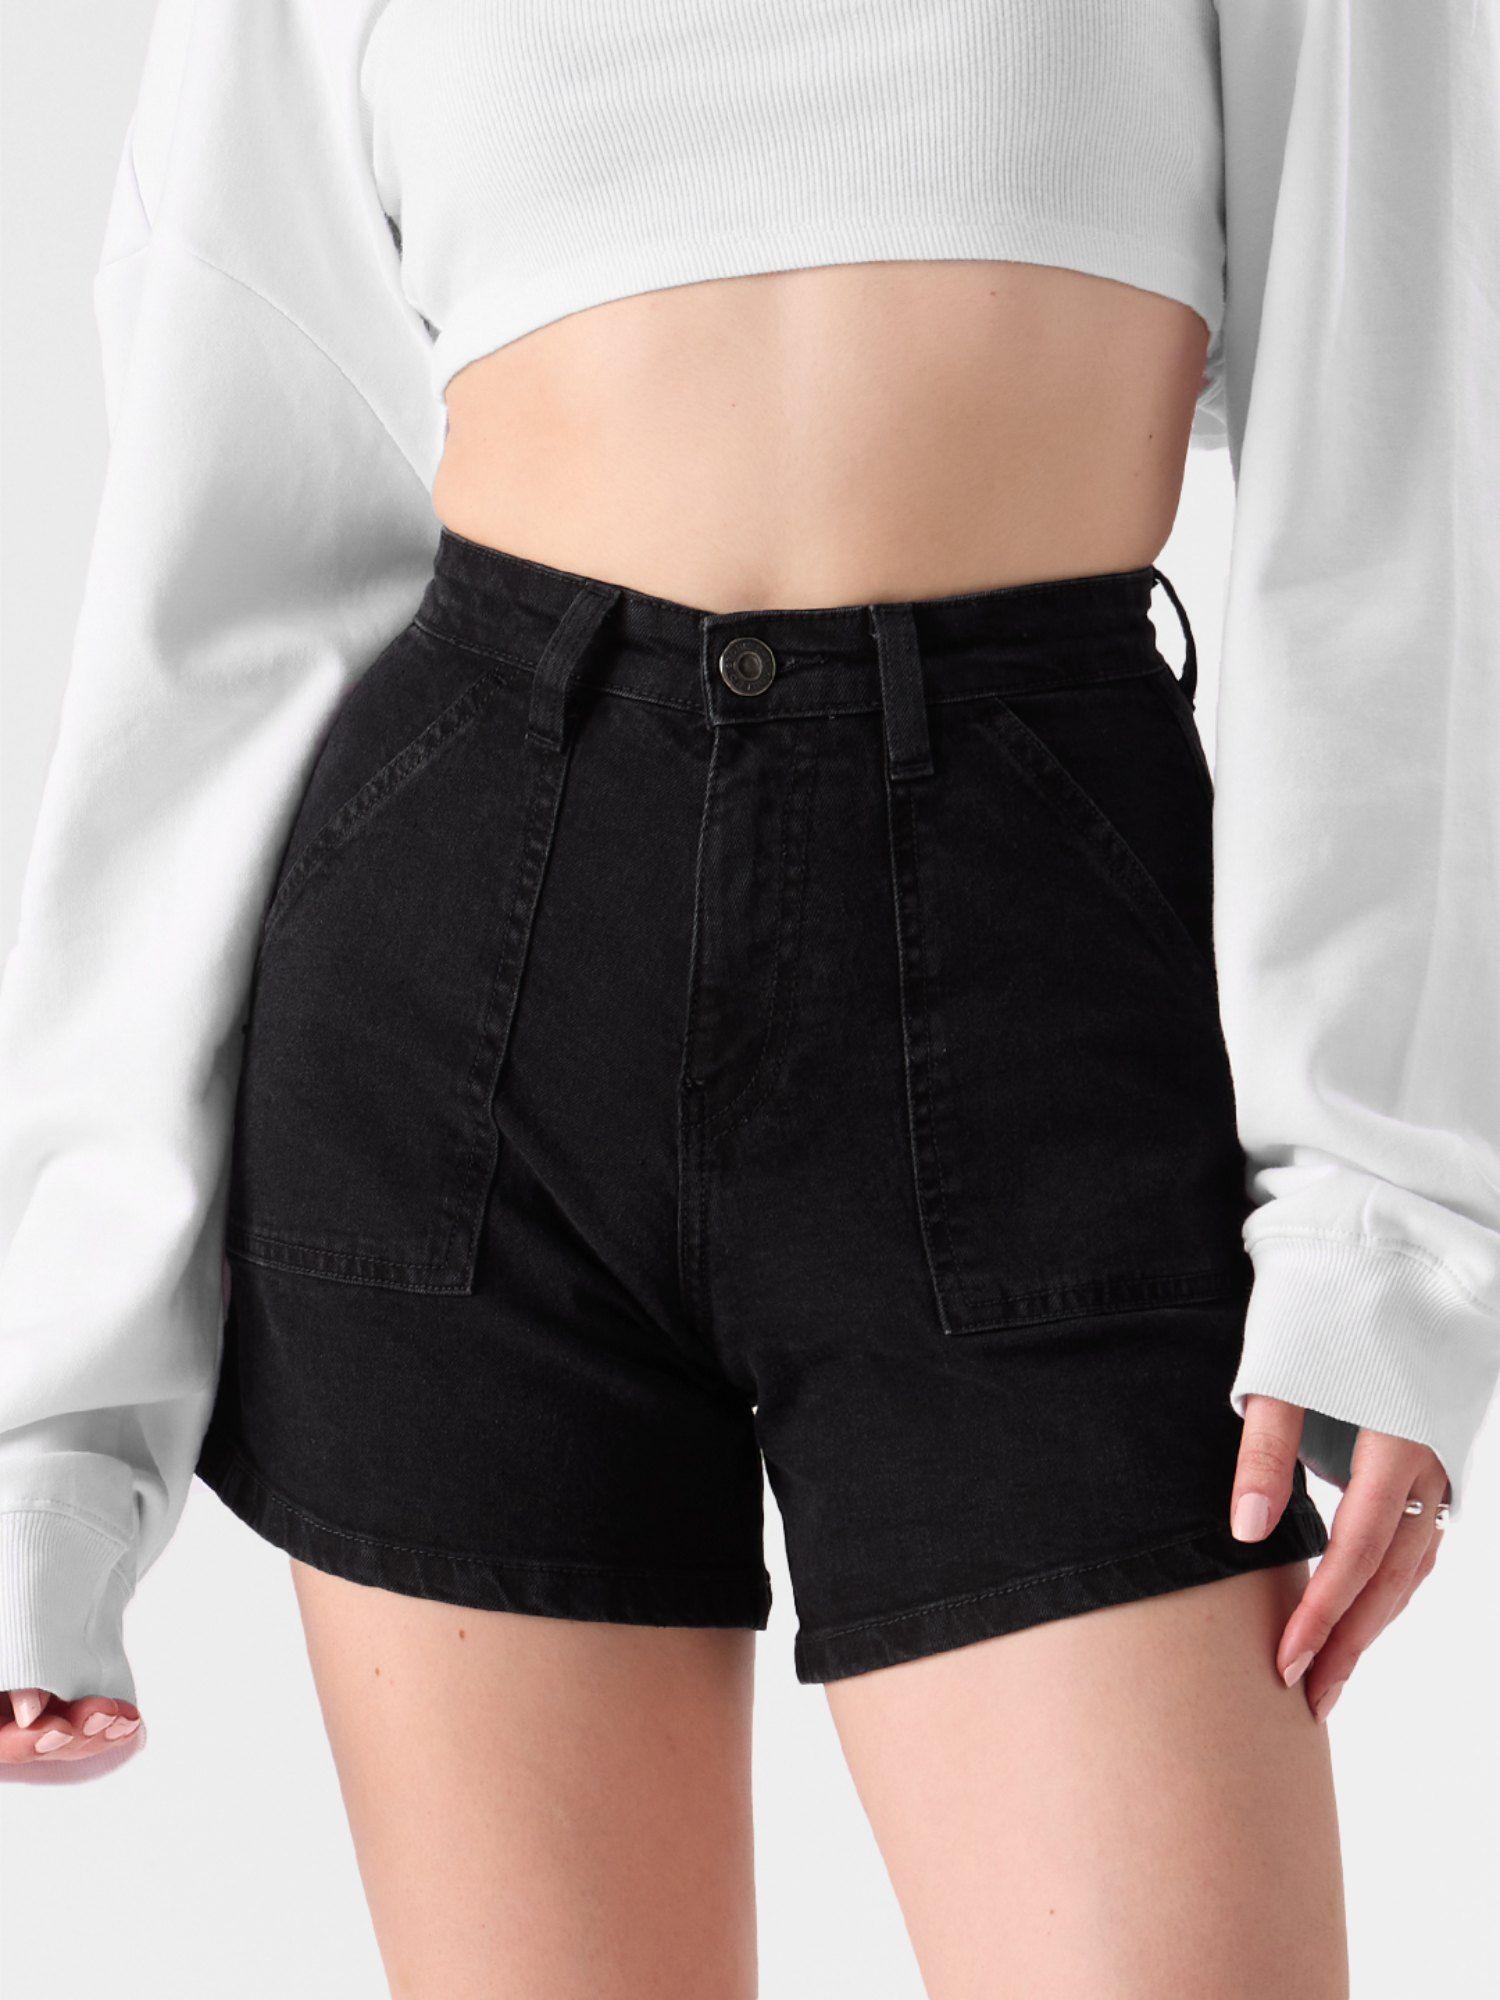 original solids: black shorts for womens